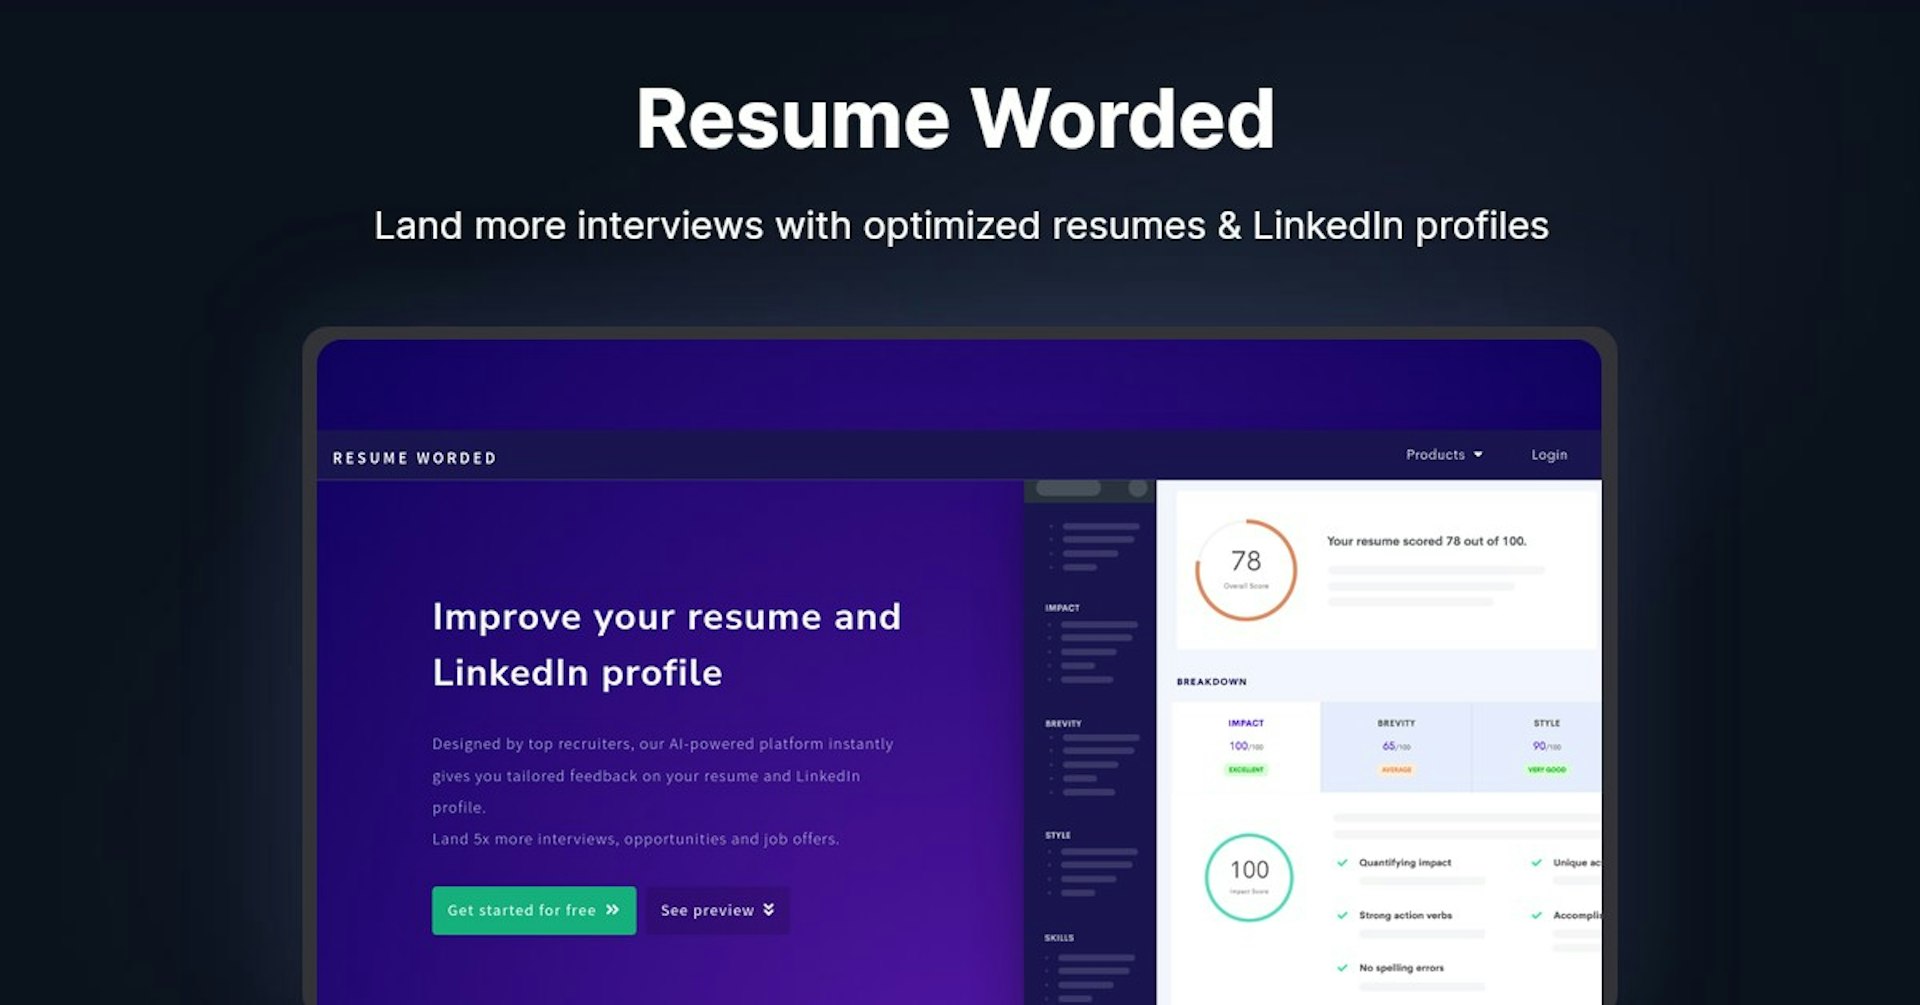 Resume Worded